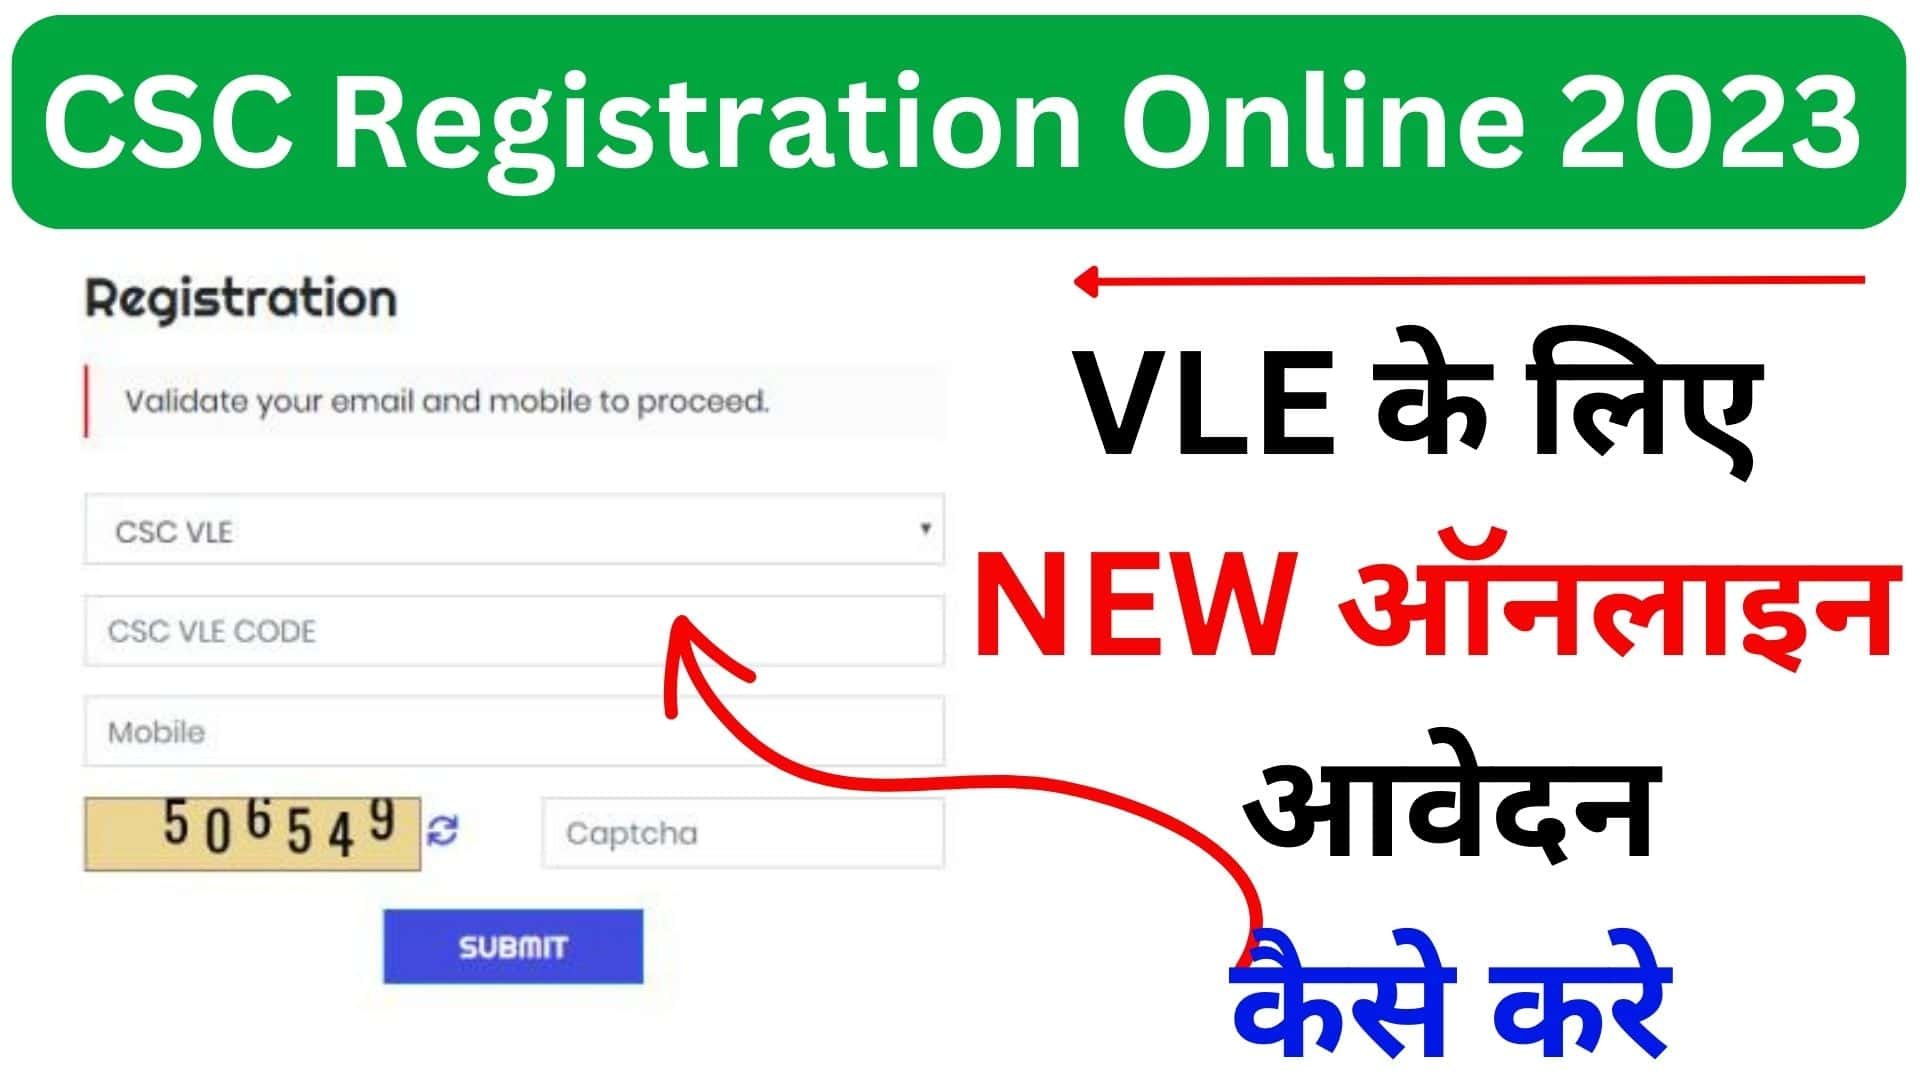 CSC Registration Online 2023 : VLE के लिए NEW ऑनलाइन आवेदन कैसे करे